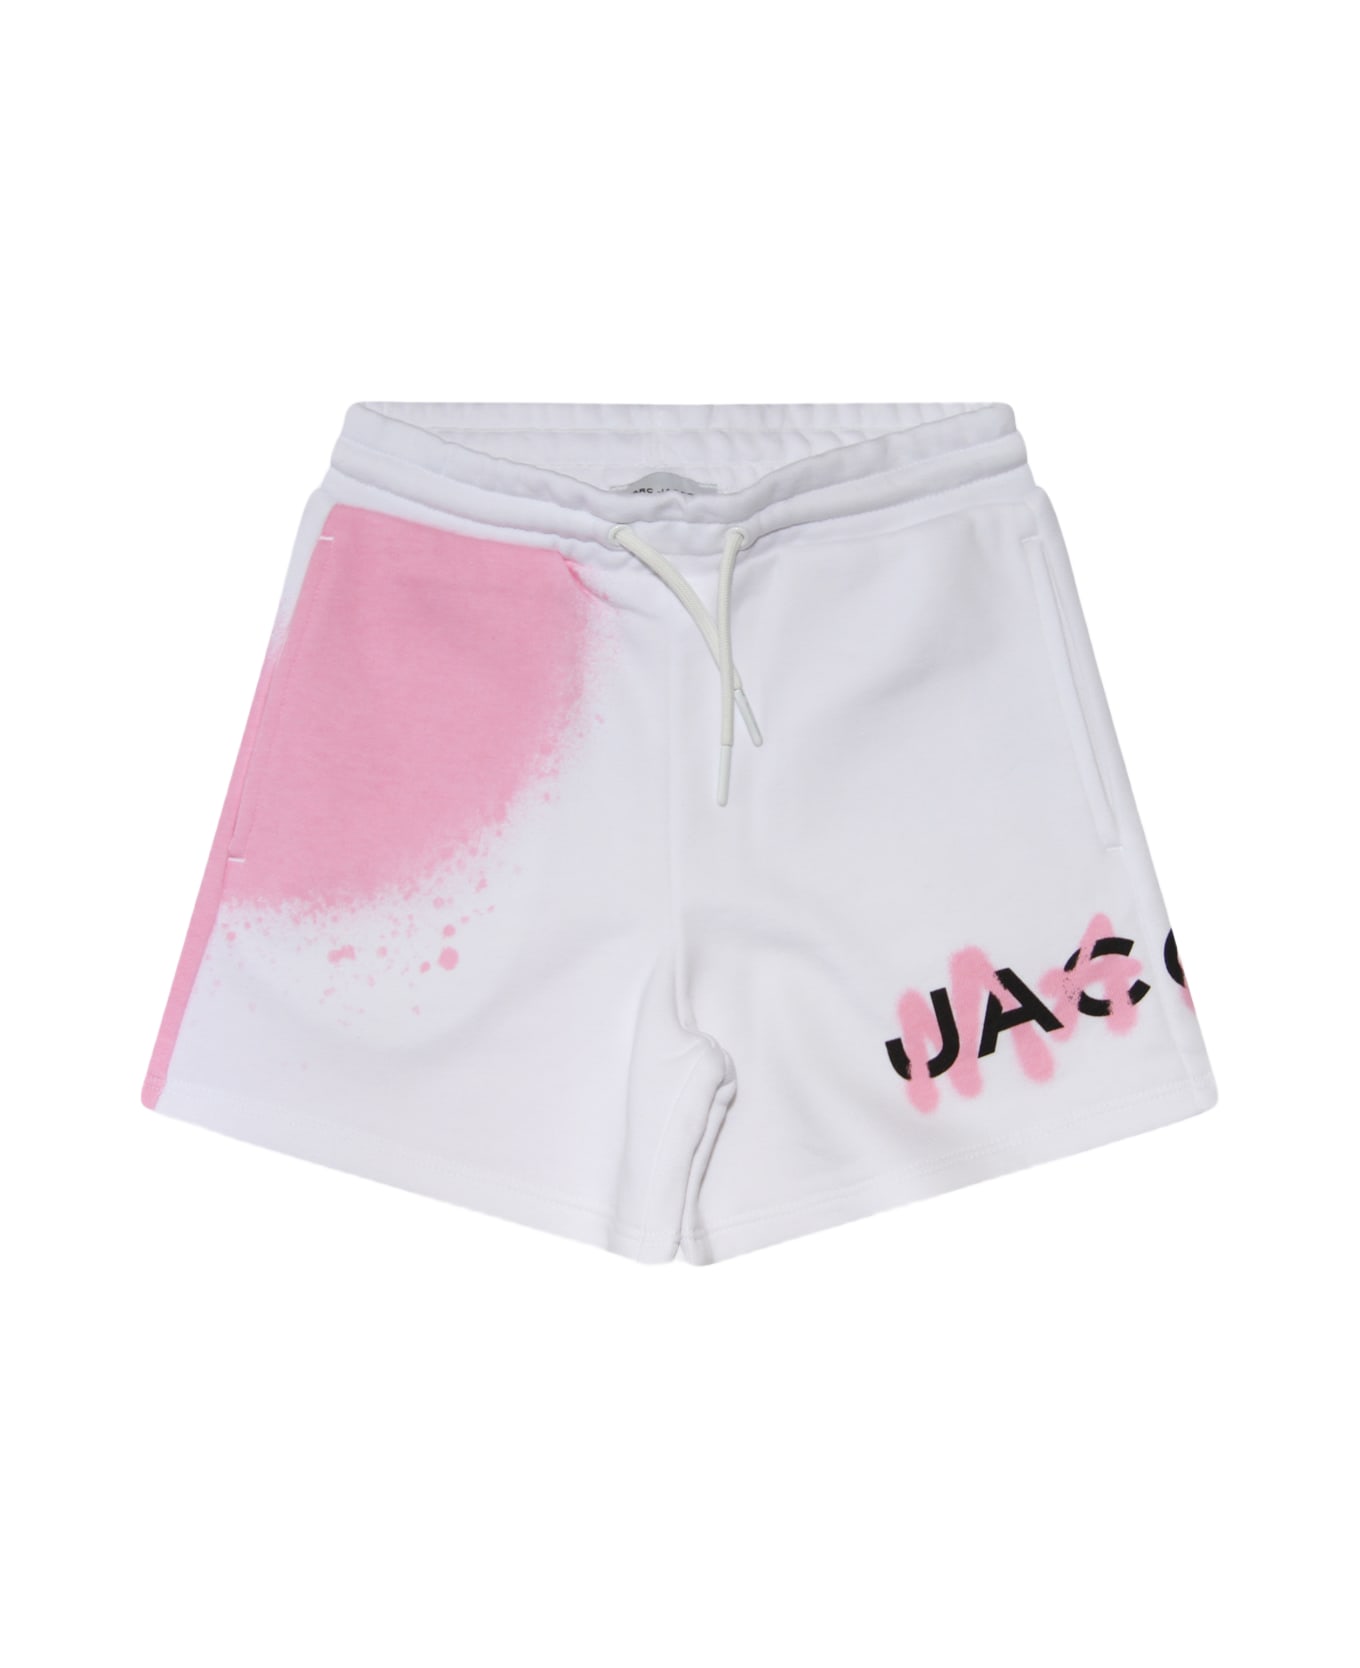 Marc Jacobs White Cotton Shorts - White ボトムス